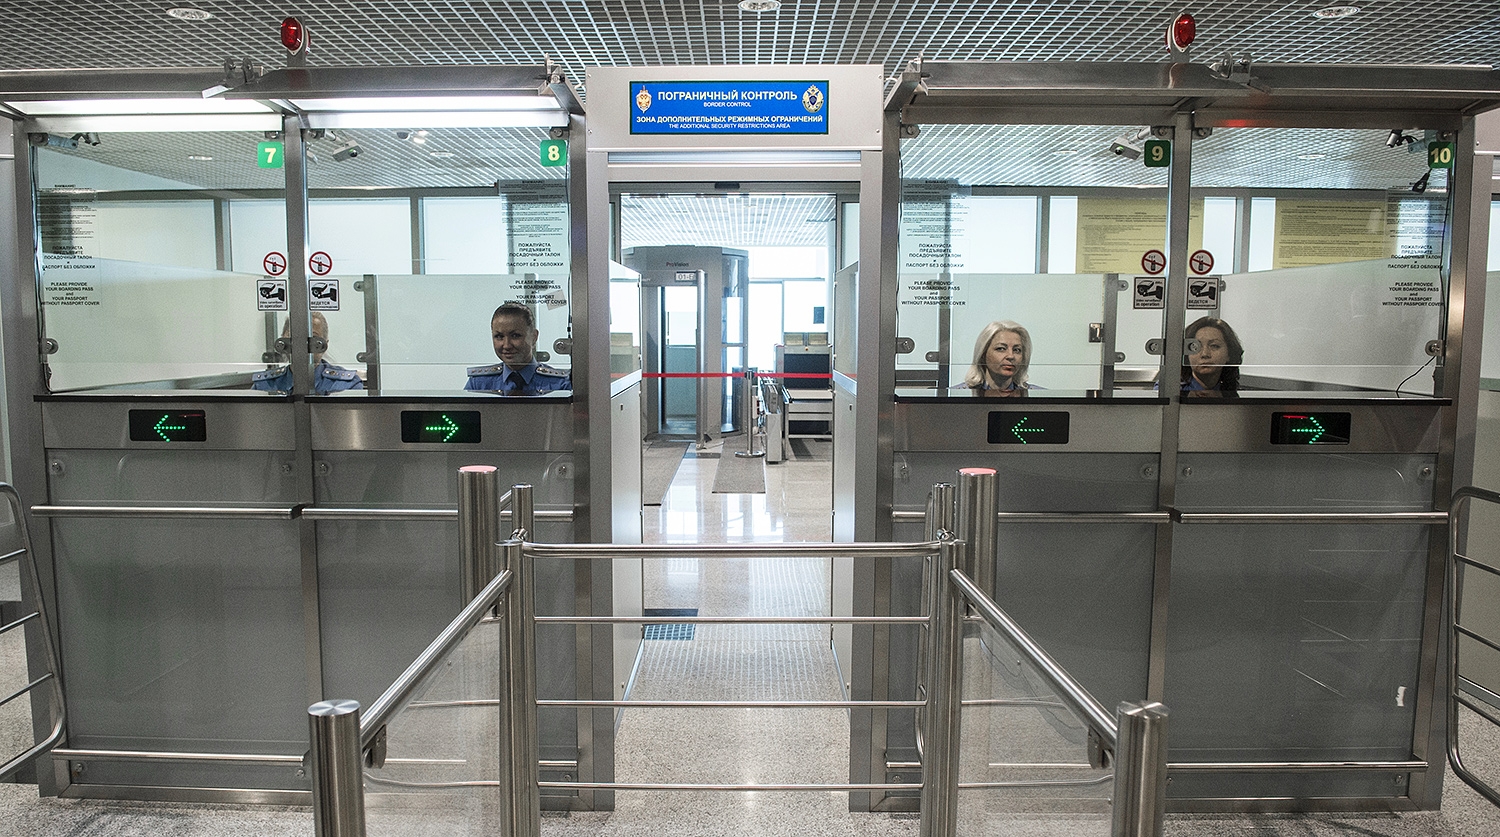 В московском аэропорту задержали 40 граждан Израиля